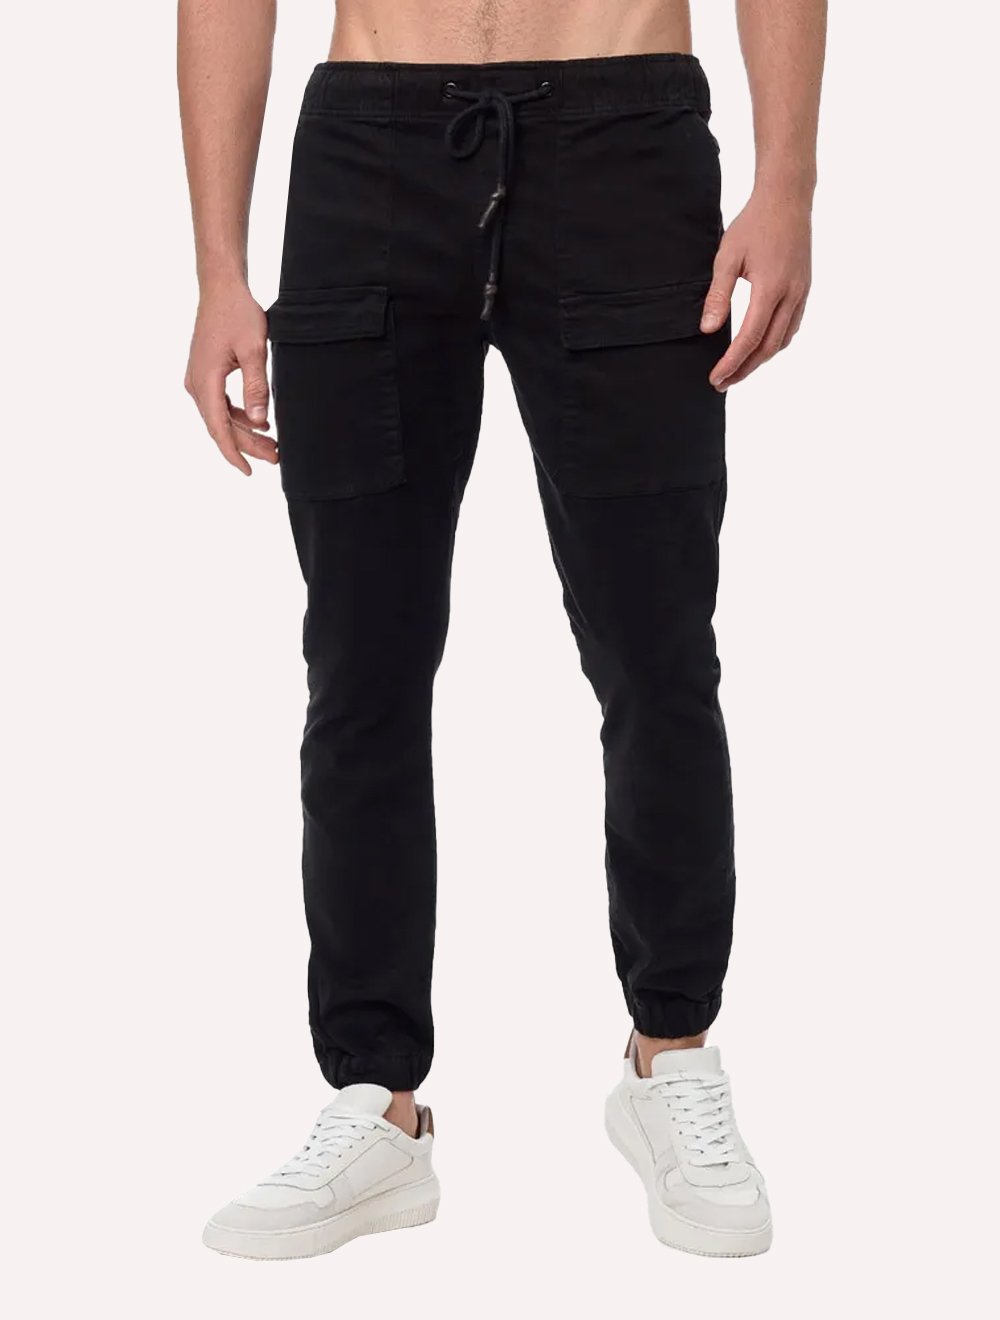 Calça Calvin Klein Jeans Masculina Cordão Color Cargo Preta